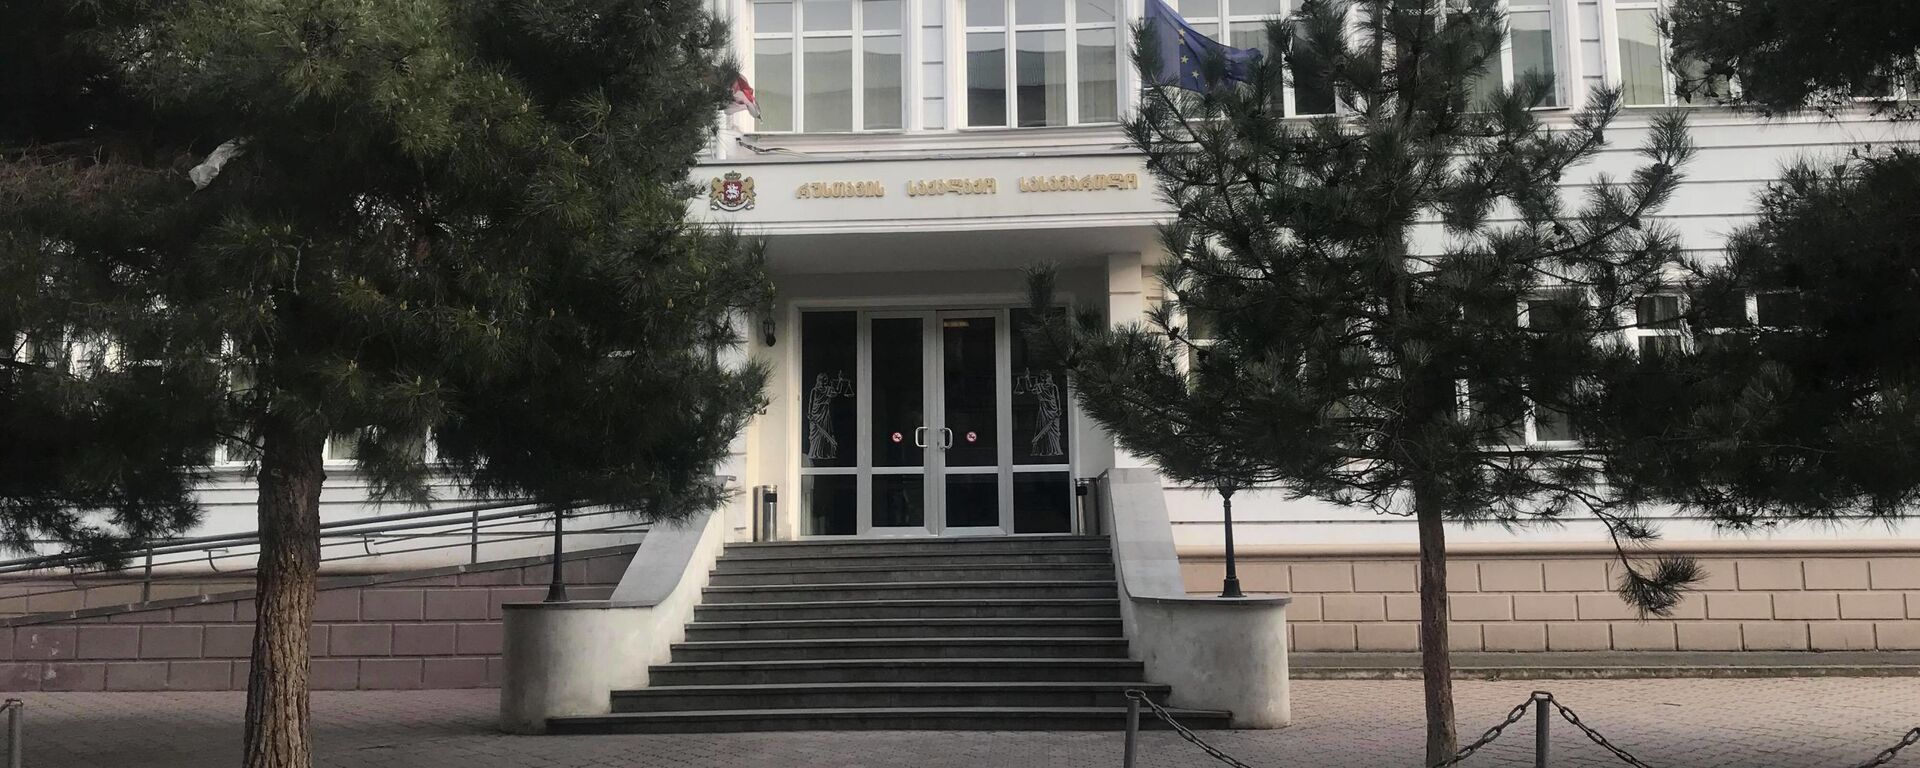 Здание городского суда в городе Рустави - Sputnik Грузия, 1920, 12.06.2020